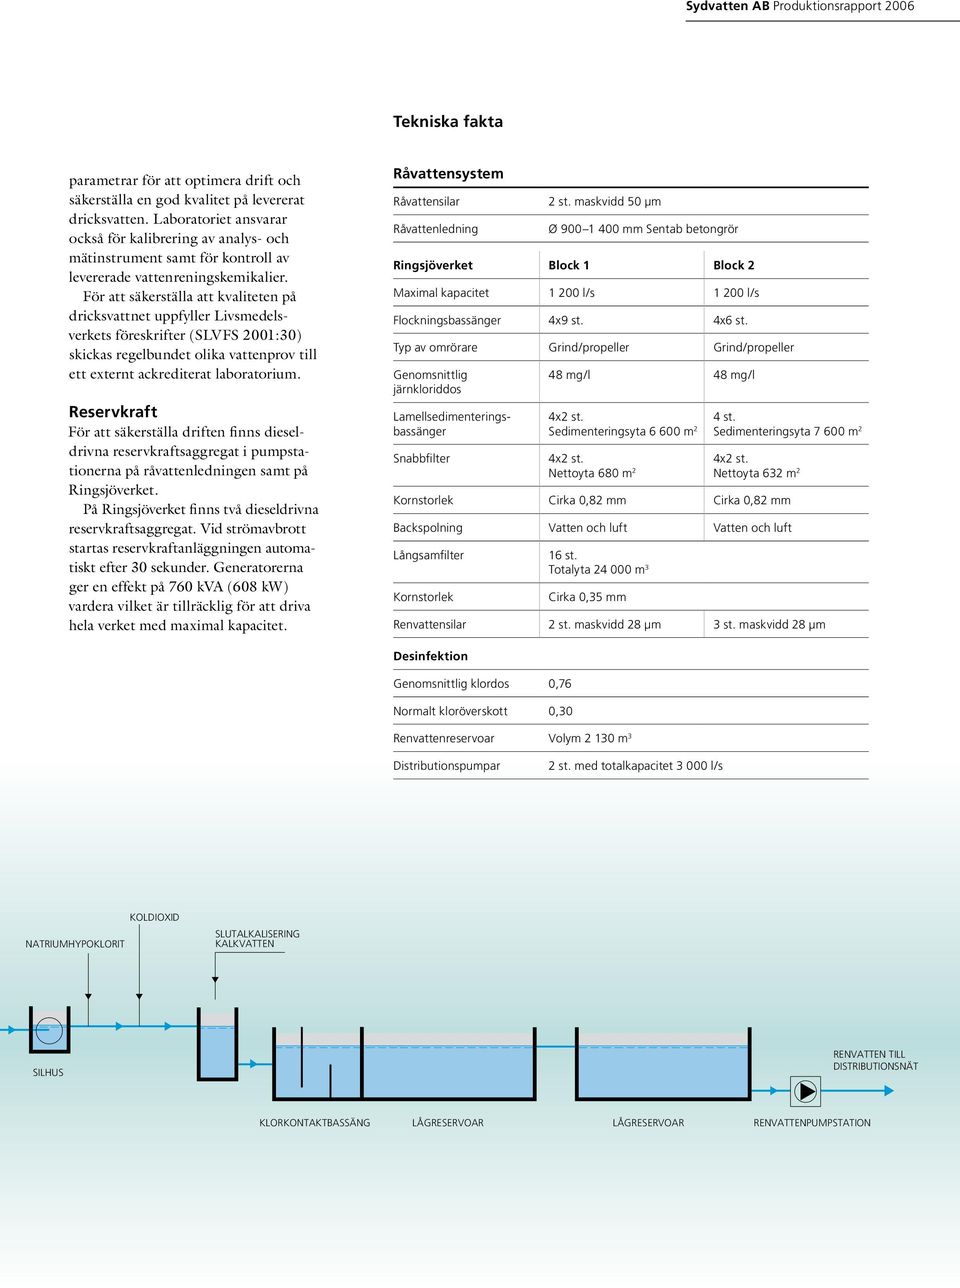 För att säkerställa att kvaliteten på dricksvattnet uppfyller Livsmedelsverkets föreskrifter (SLVFS 2001:30) skickas regelbundet olika vattenprov till ett externt ackrediterat laboratorium.